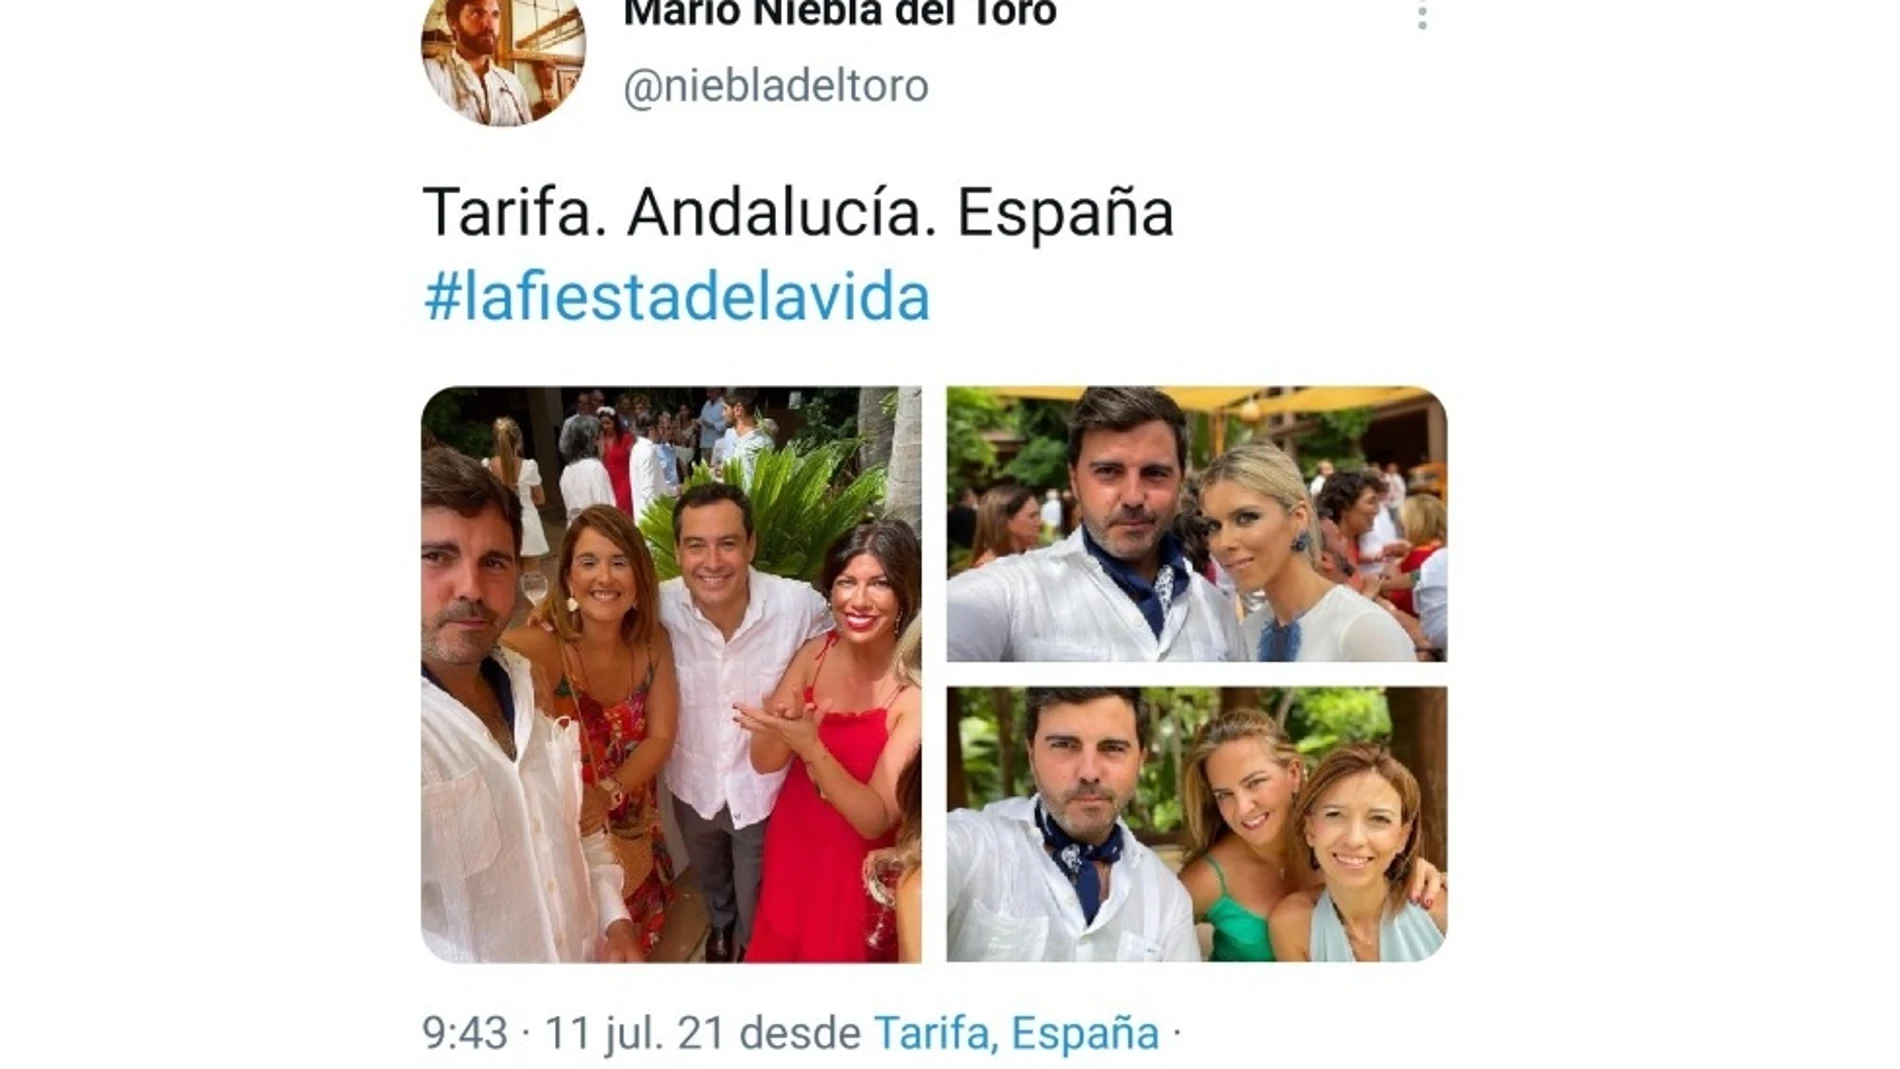 Una foto de Juanma Moreno sin mascarilla y sin distancia de seguridad en una boda desata la polémica